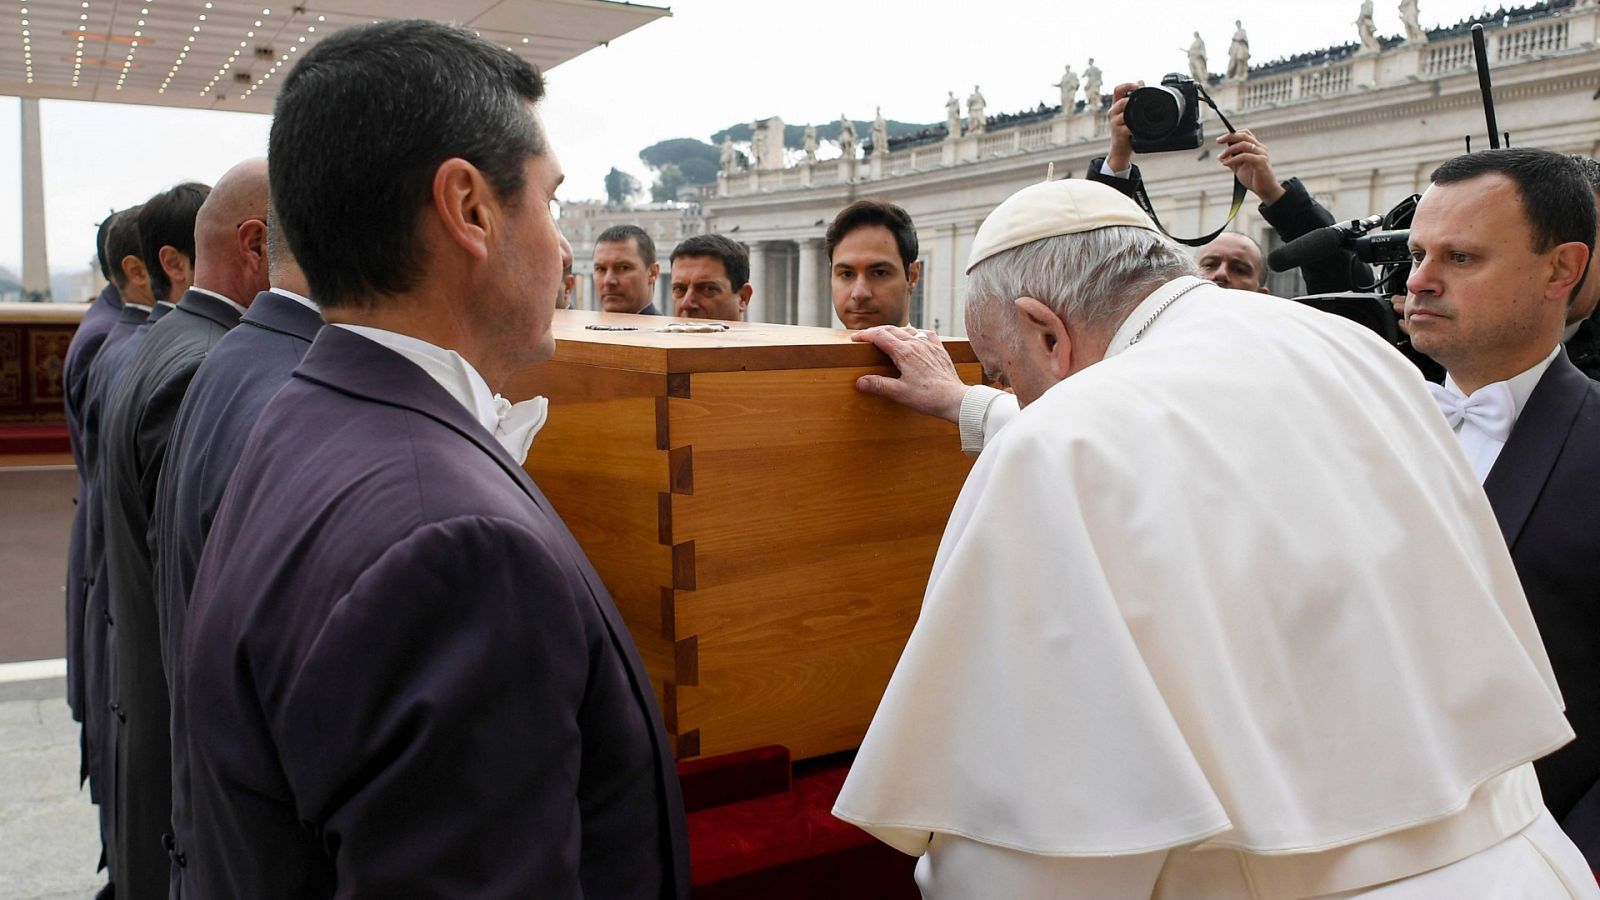 El funeral de Benedicto XVI: una despedida inédita para el papa emérito